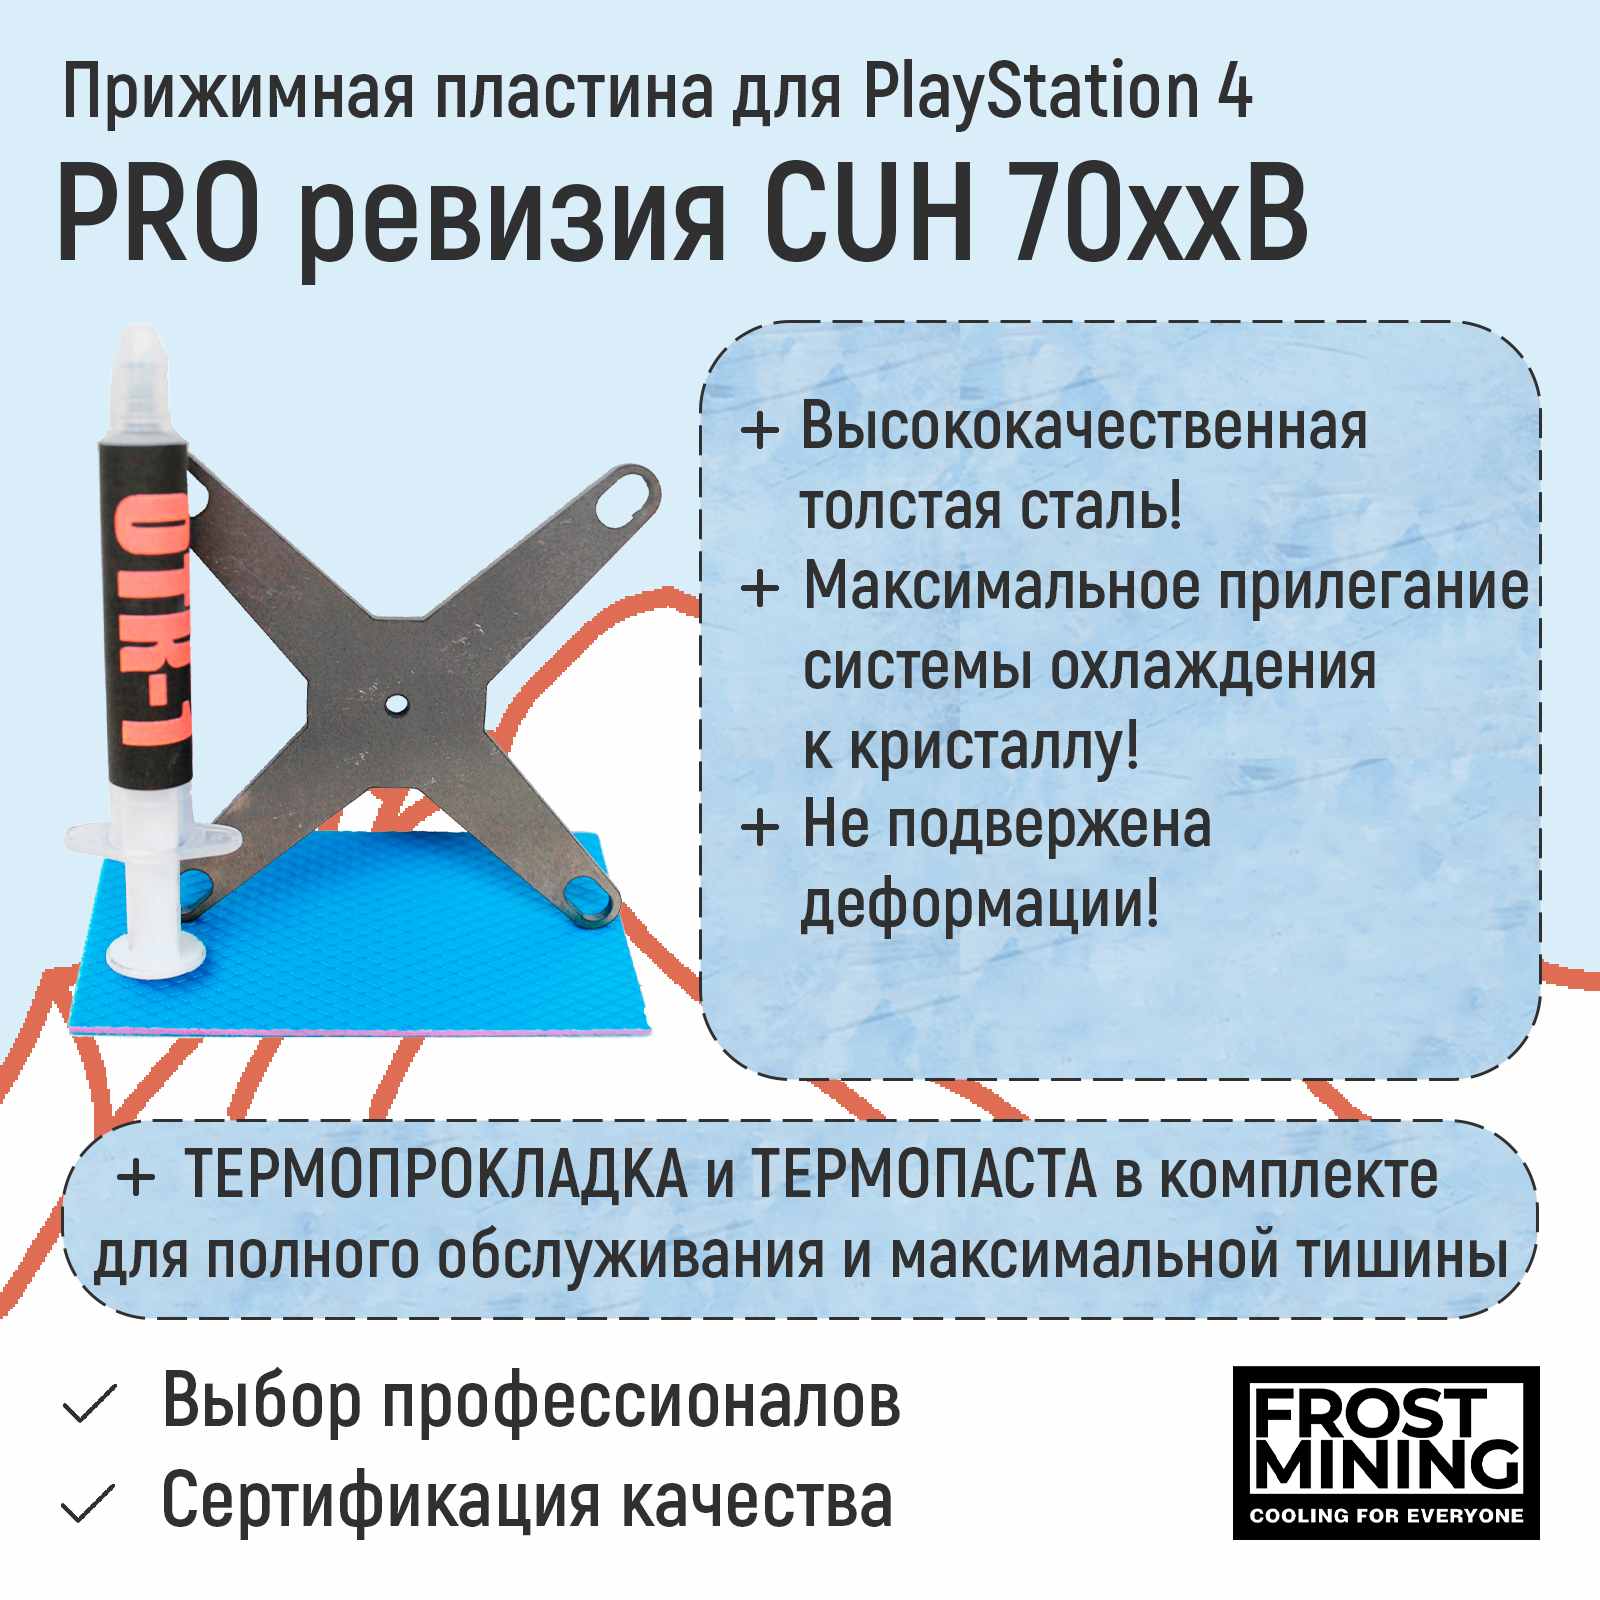 Прижимная пластина, Прижимная пластина для приставки FrostMining для Playstation 4 Pro